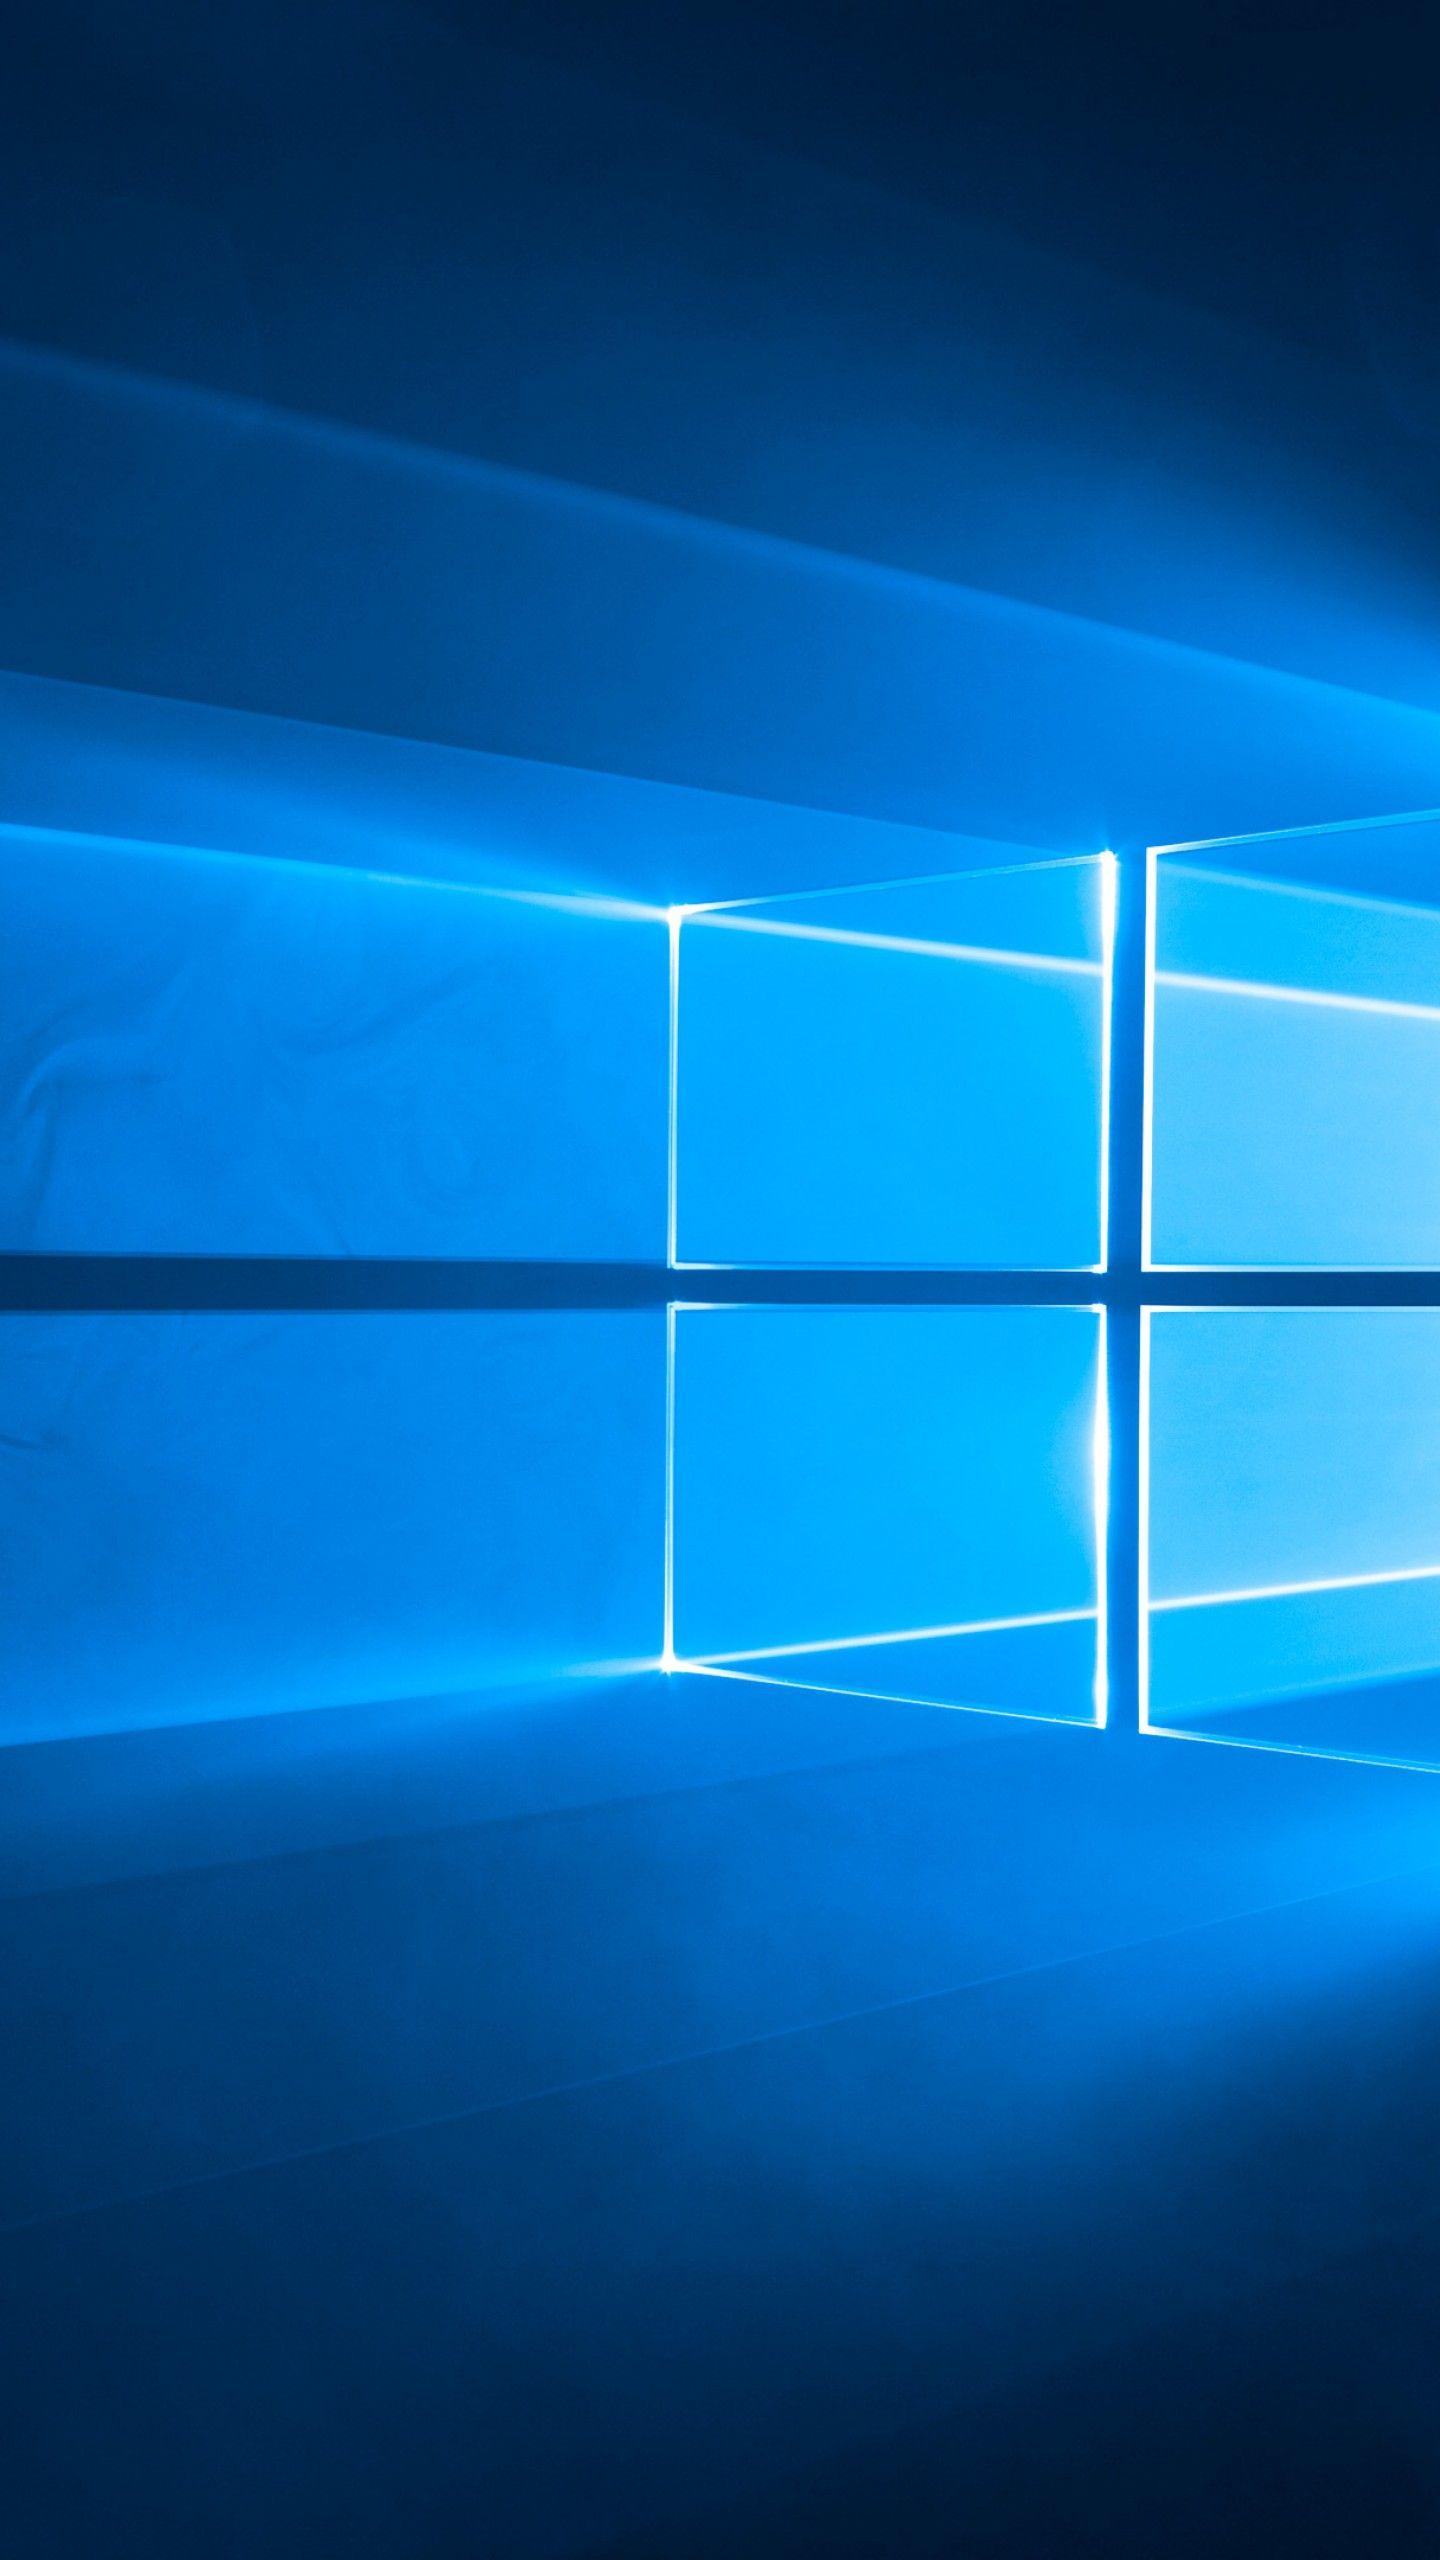 Windows 10 4K Wallpapers - Top Những Hình Ảnh Đẹp